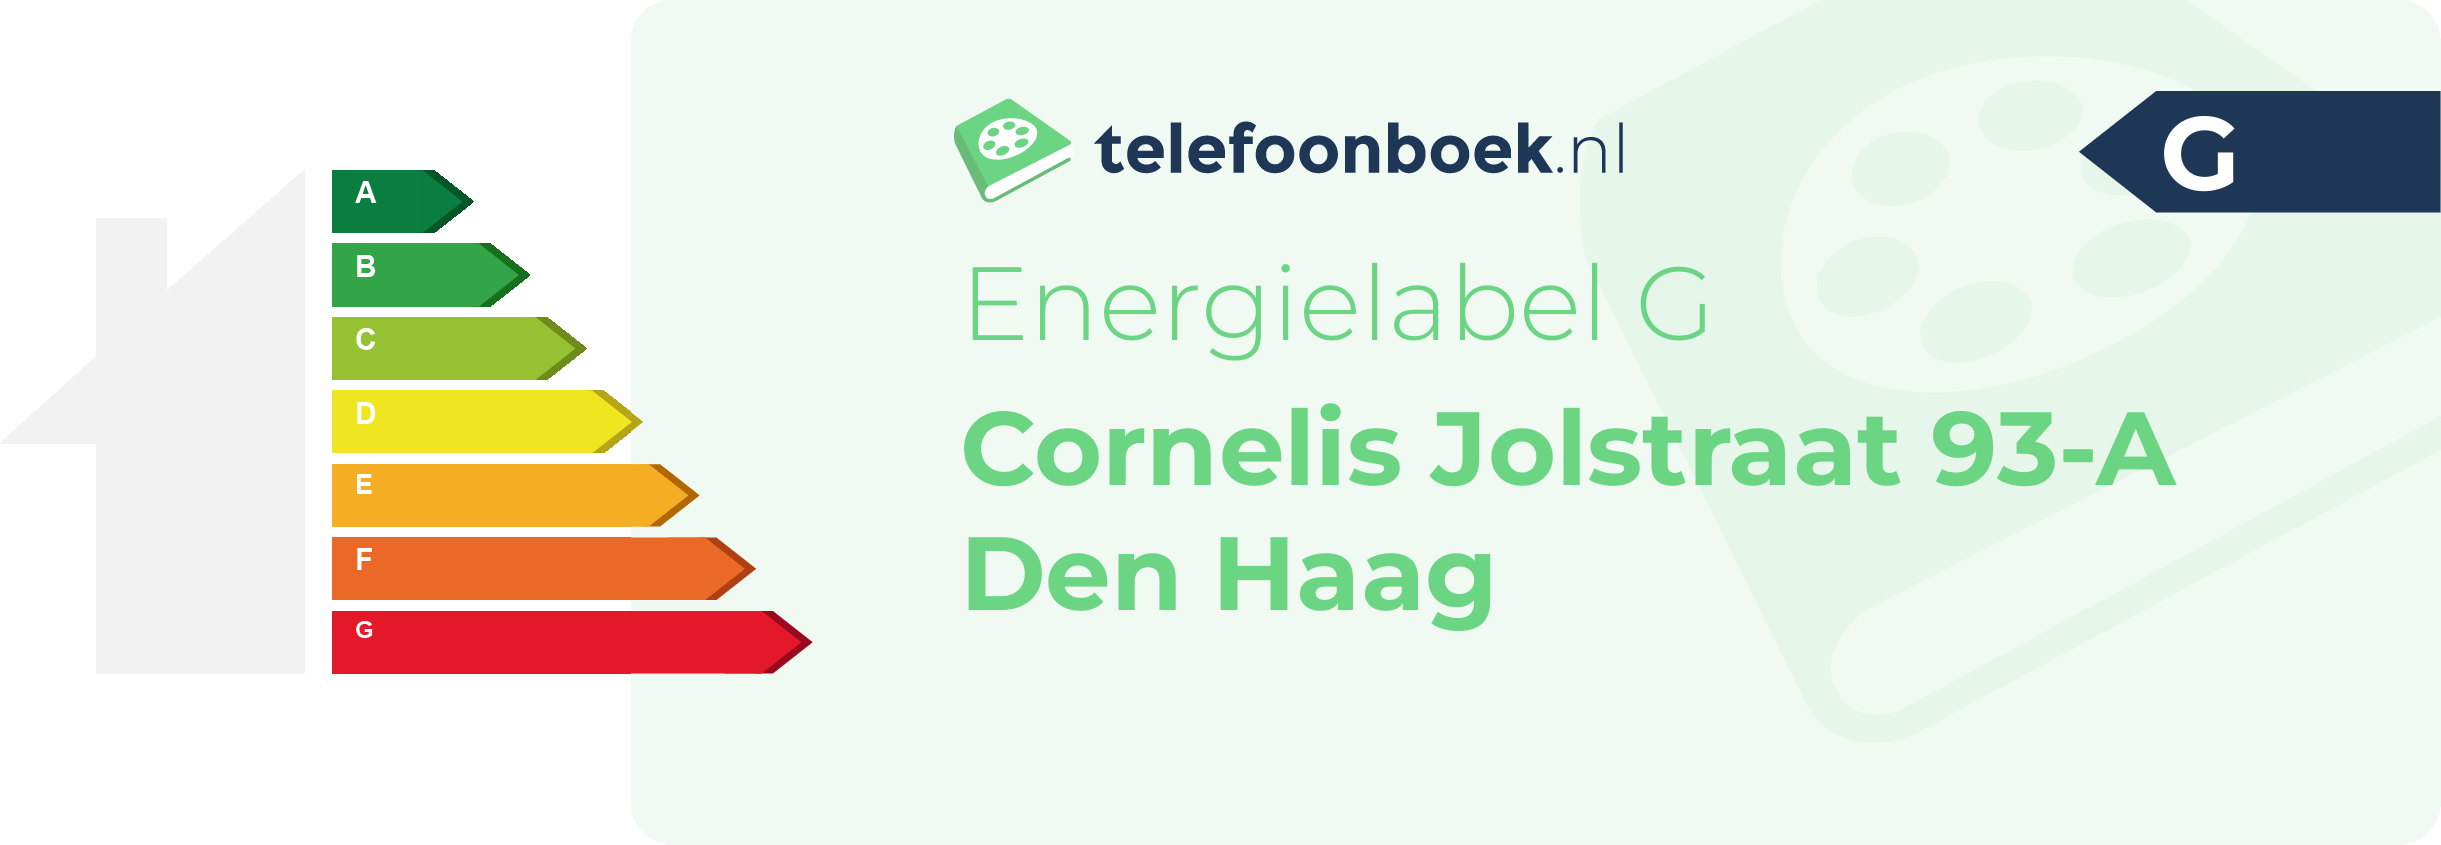 Energielabel Cornelis Jolstraat 93-A Den Haag